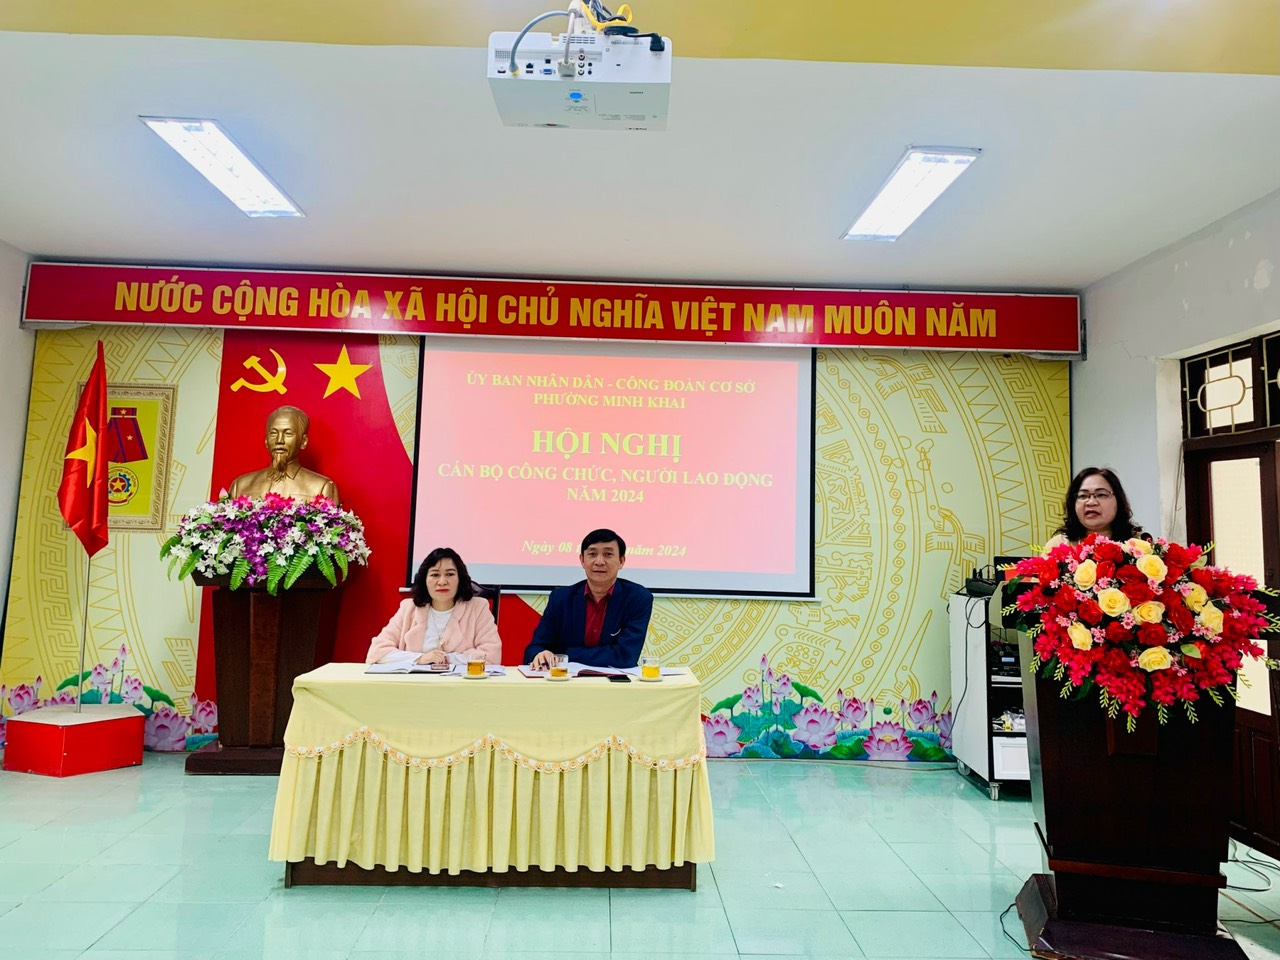 Phường Minh Khai tổ chức Hội nghị cán bộ, công chức, người lao động năm 2024